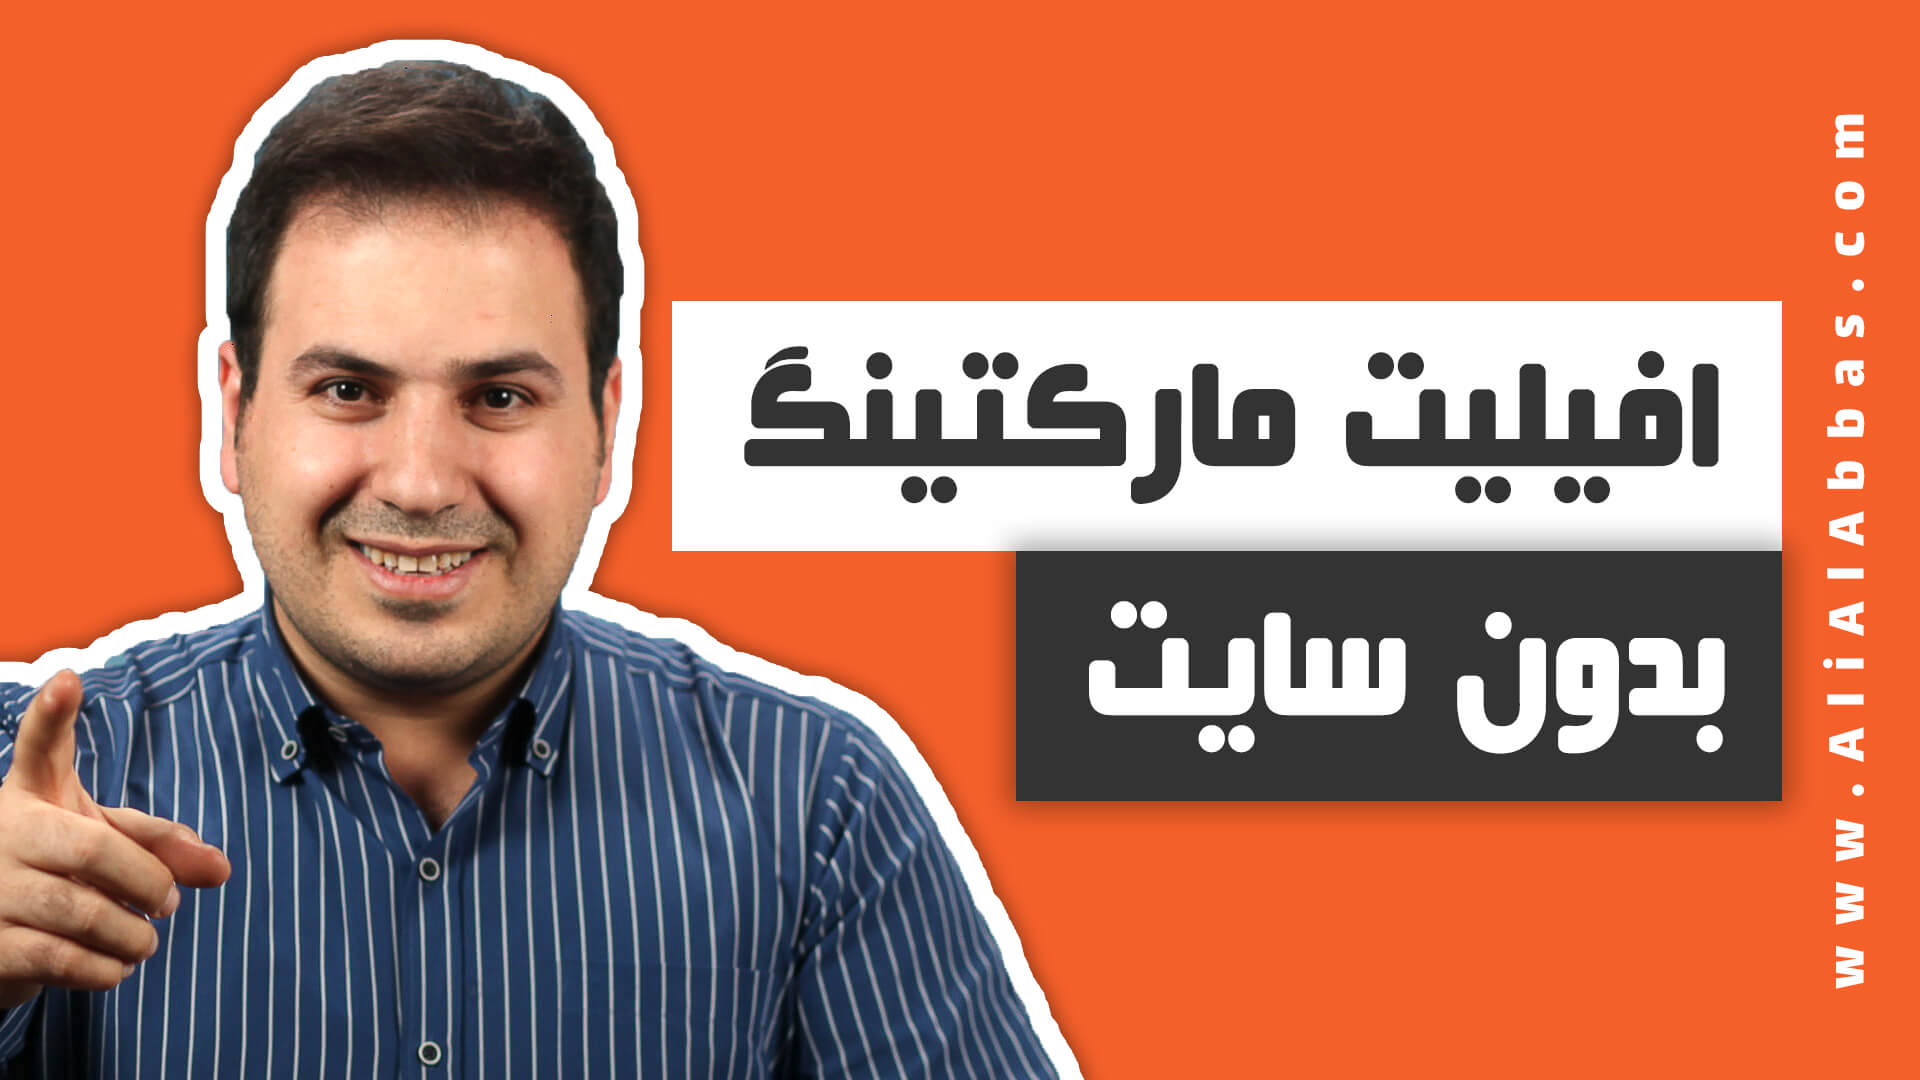 افیلیت مارکتینگ بدون سایت - بازاریابی افیلیت بدون وبسایت - علی آل عباس